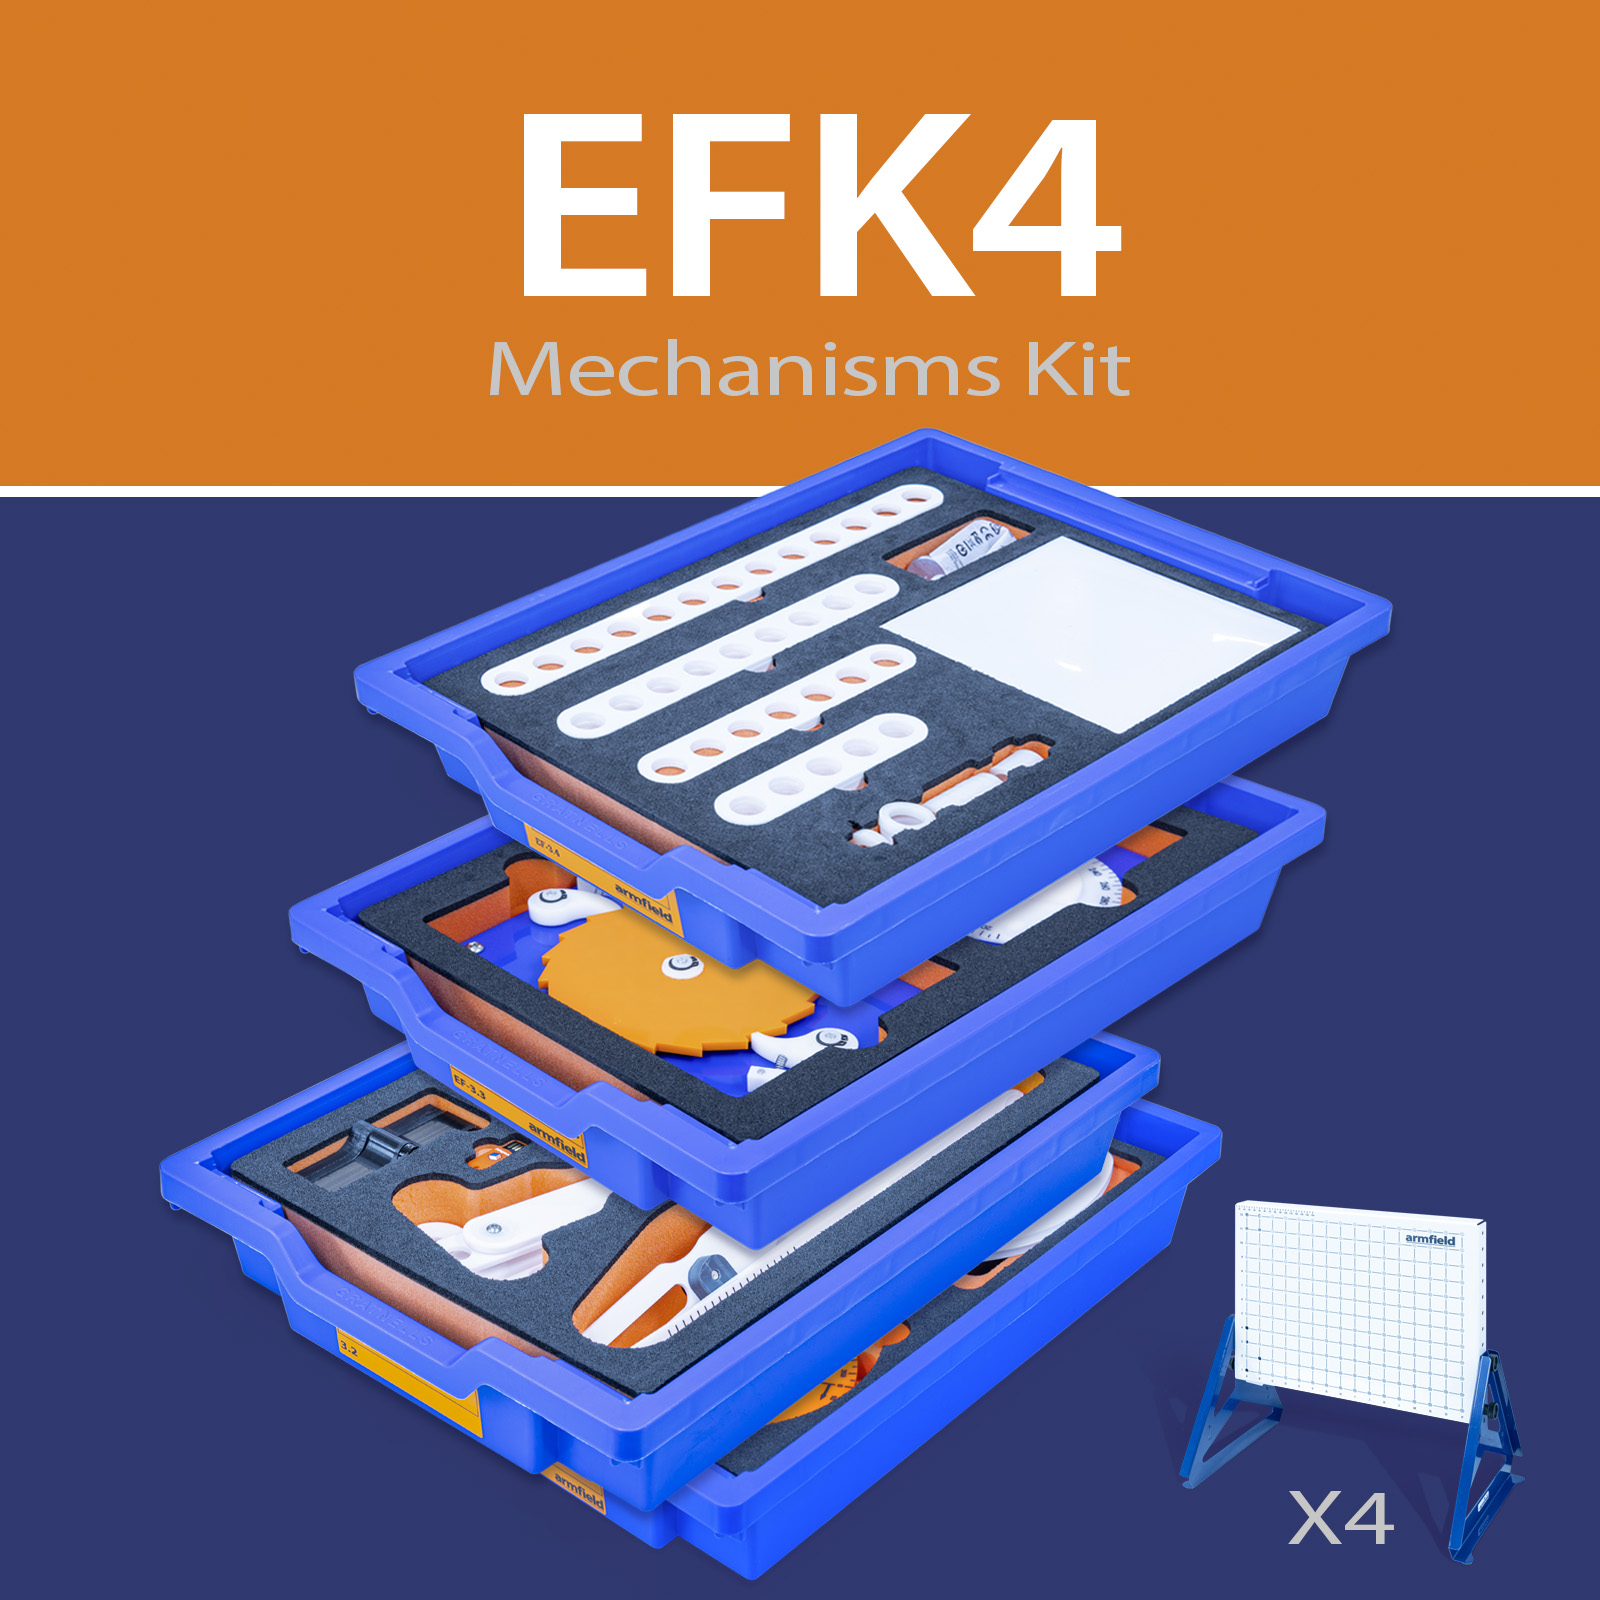 Mechanisms Kit